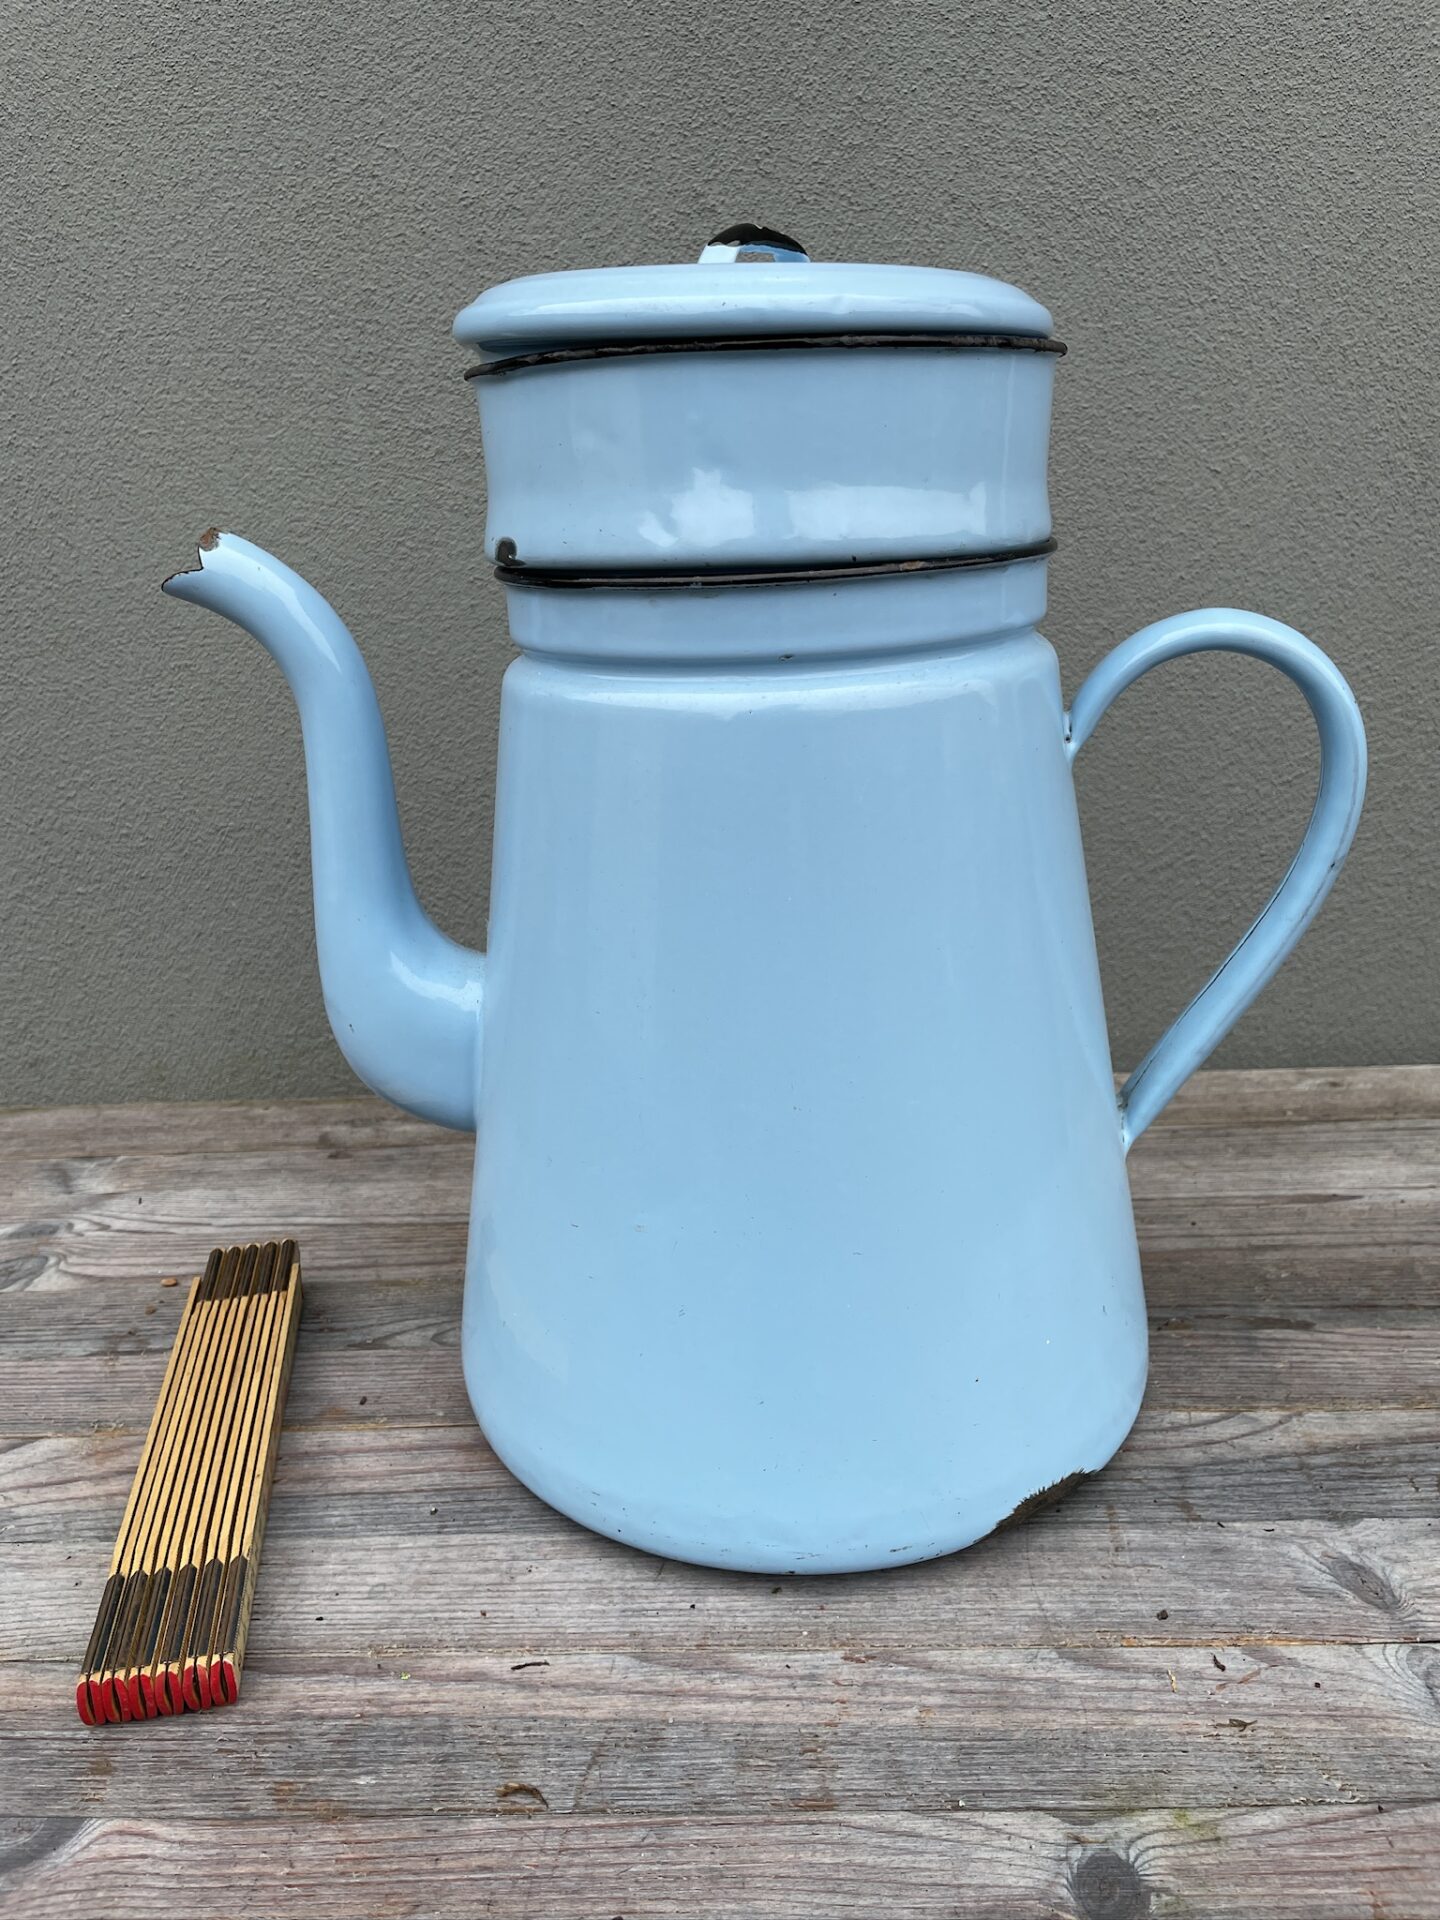 Kæmpe Madam Blå, 10 liter (h= 40 cm) Klar til brug med kaffepose incl. pris 500kr